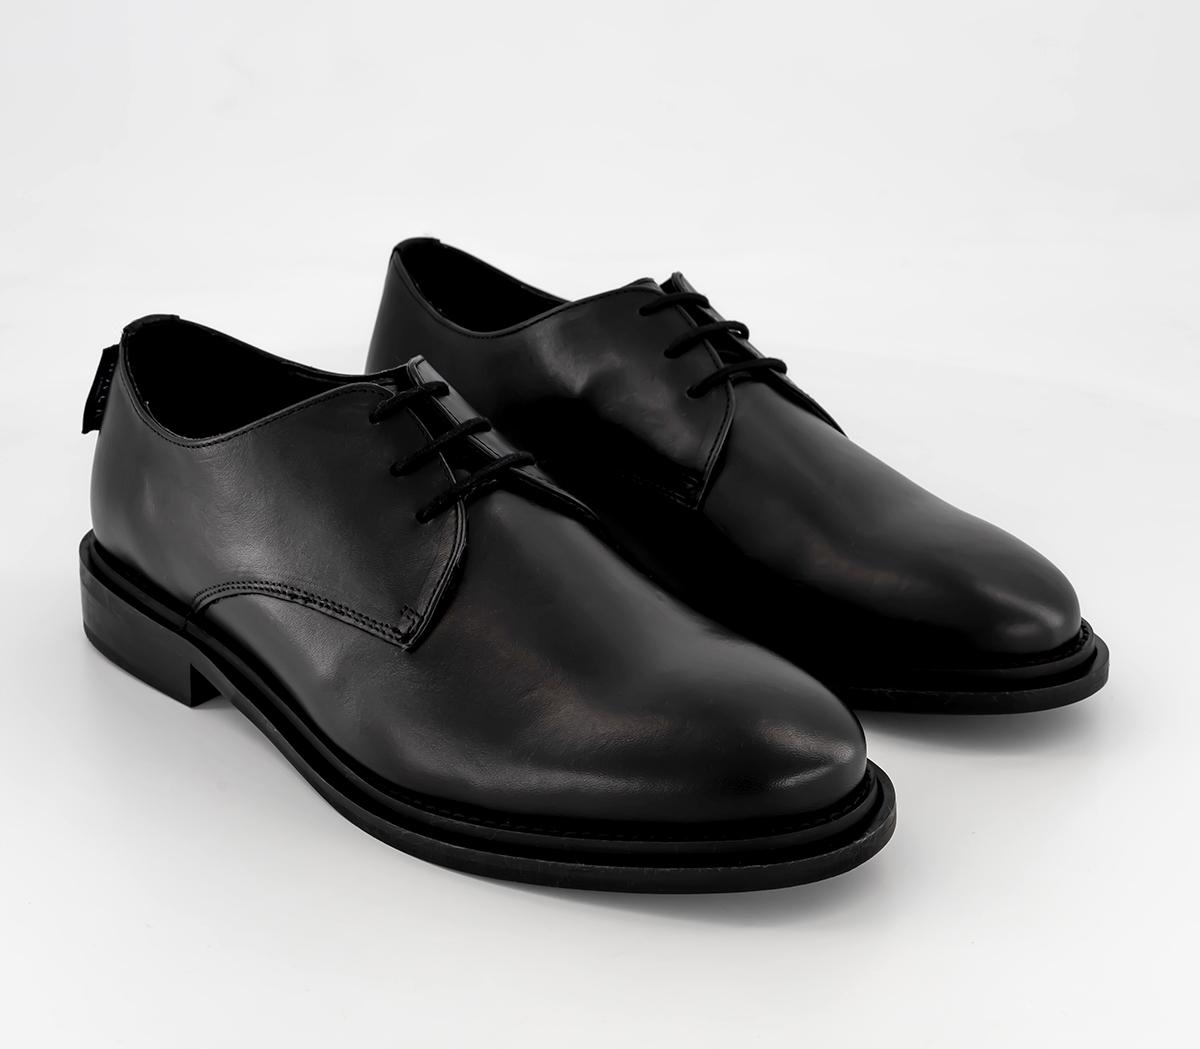 Walk London Mens Antonio Derby Shoes Black, 8